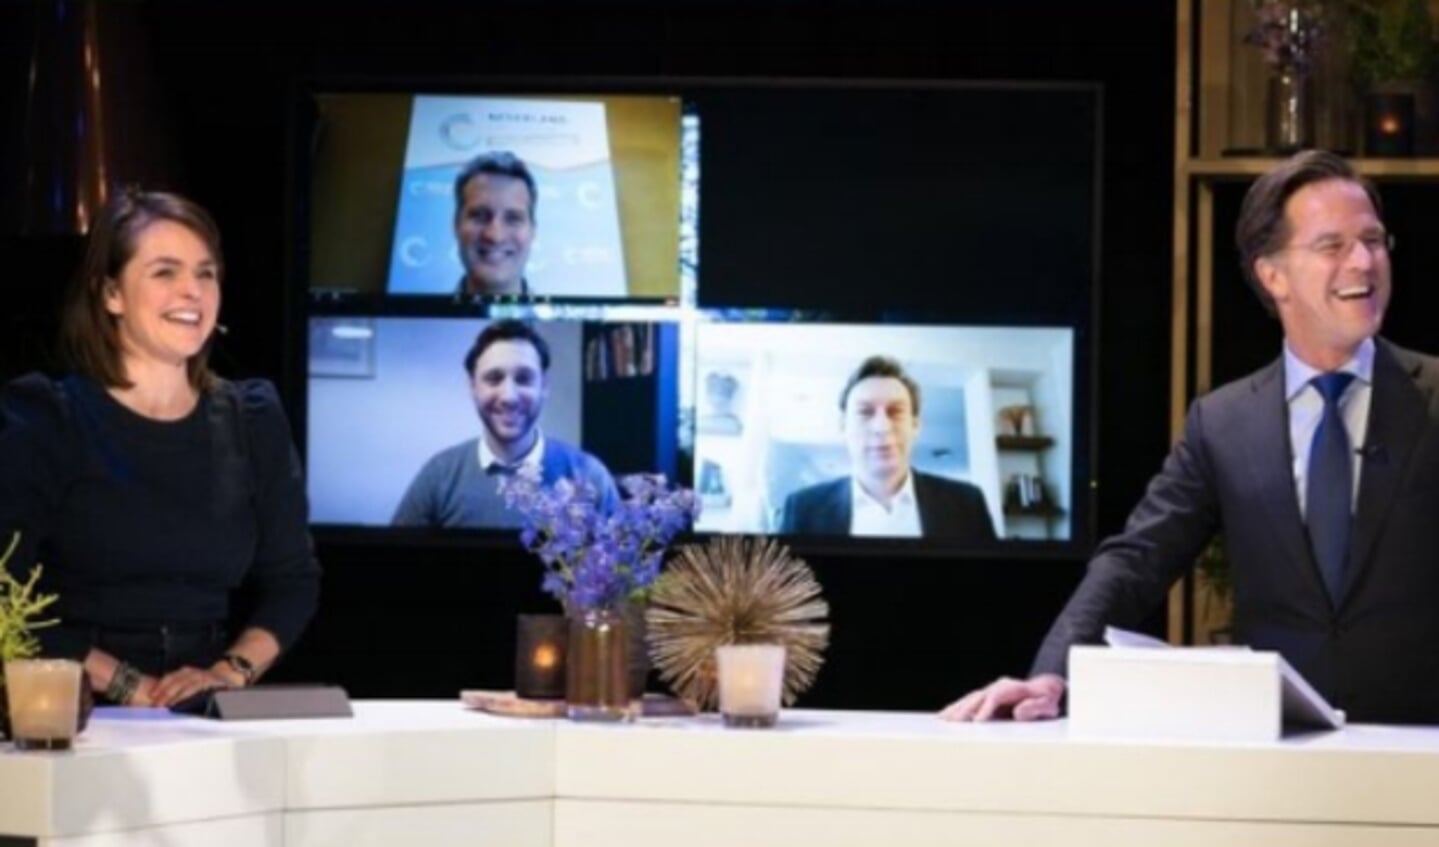 Minister-president Mark Rutte en staatssecretaris Stientje van Veldhoven waren aanwezig tijdens de digitale prijsuitreiking.